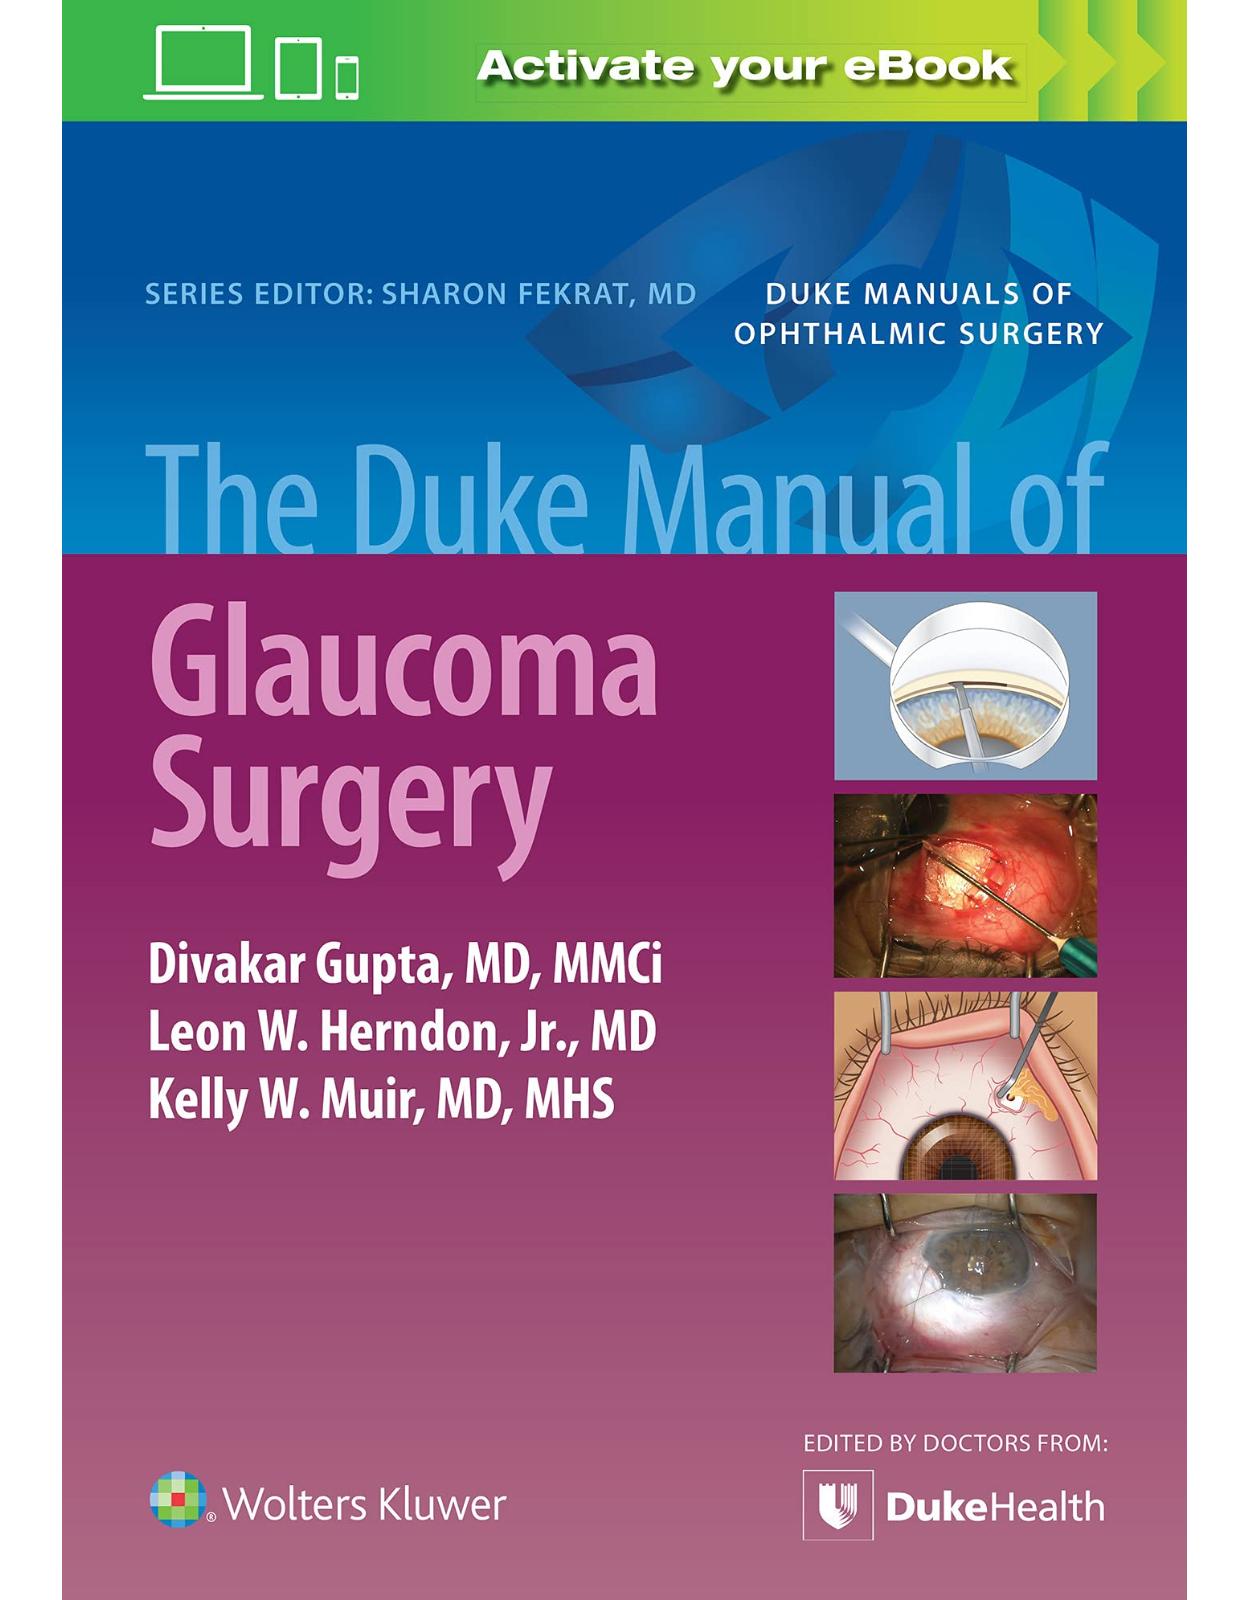  The Duke Manual of Glaucoma Surgery